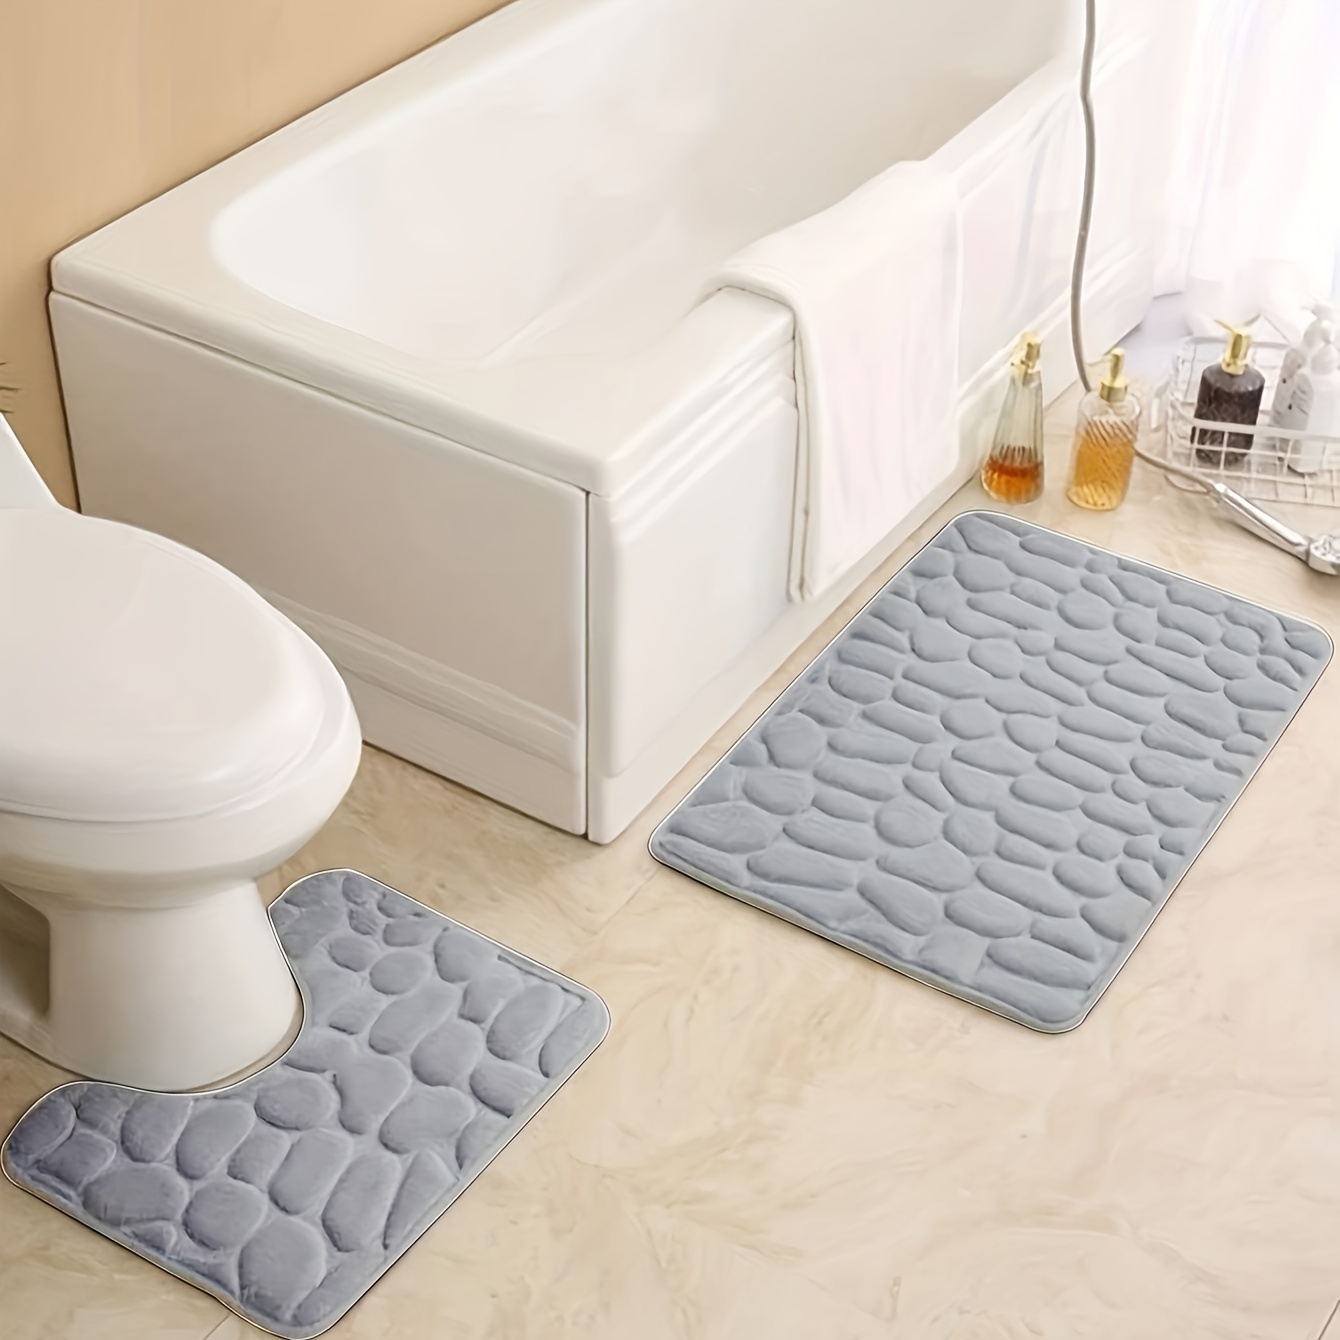 Tapete de ducha antideslizante de loofah - Tapete de baño suave y  absorbente para una ducha segura y cómoda, alfombras de cocina, lavandería,  dormitor